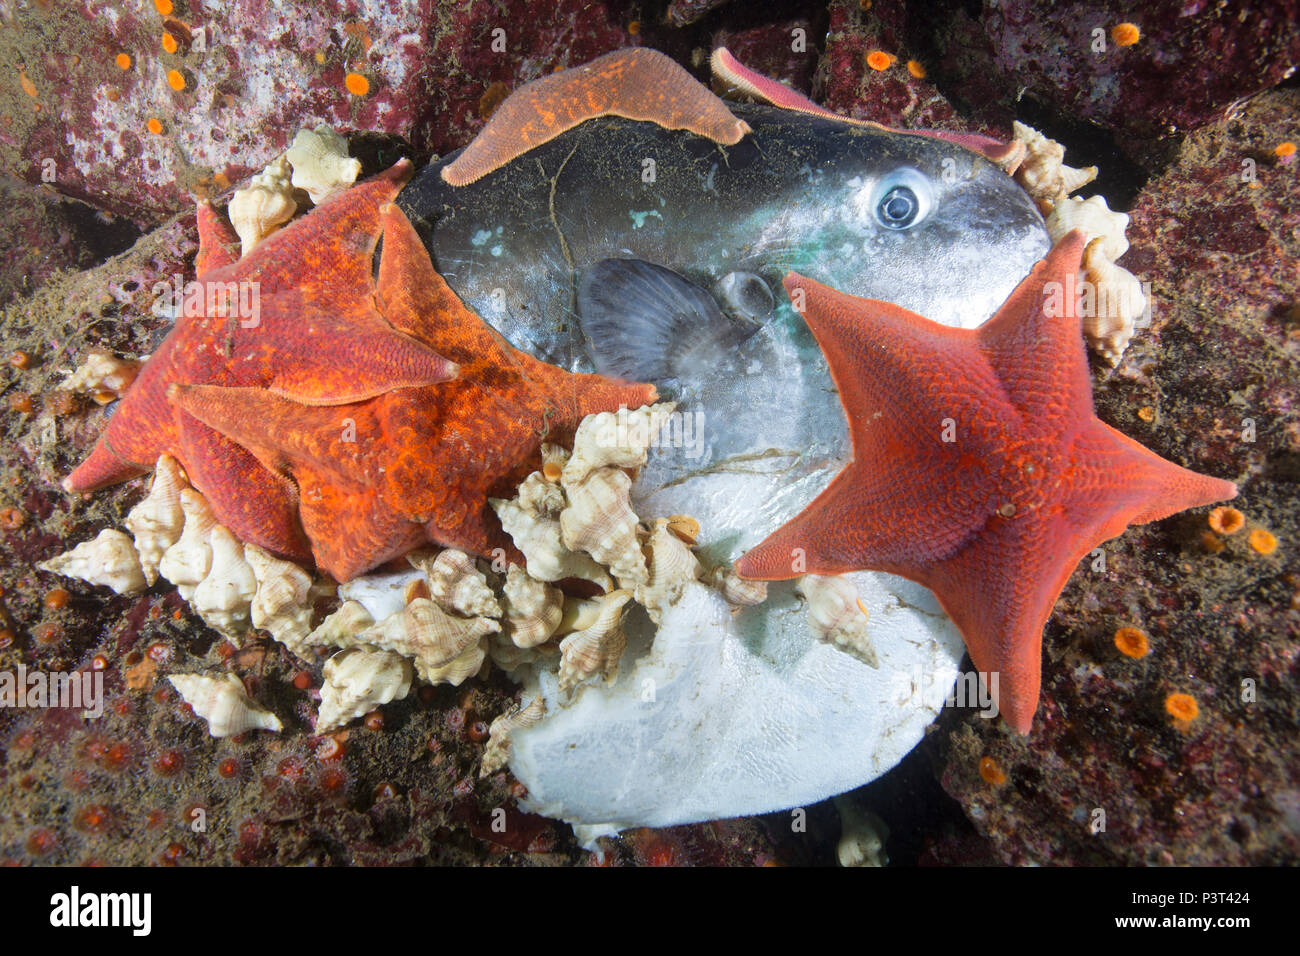 Bat Star (Asterina miniata) group and sea snails feeding on Ocean